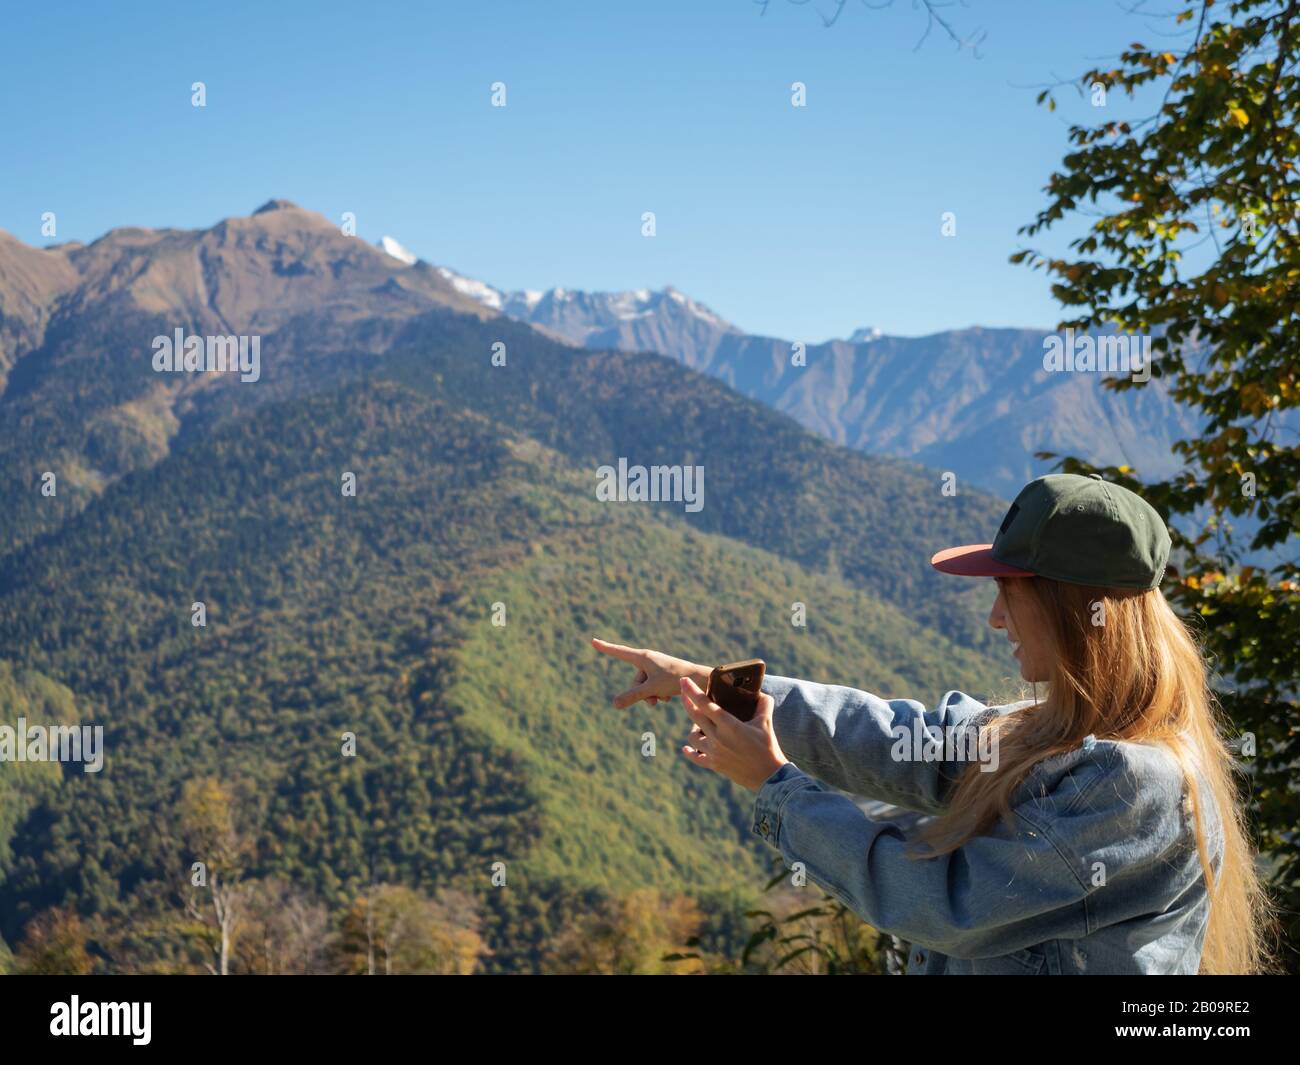 Une fille aux cheveux longs tient un téléphone dans sa main et pointe le doigt sur les pics de montagne Banque D'Images